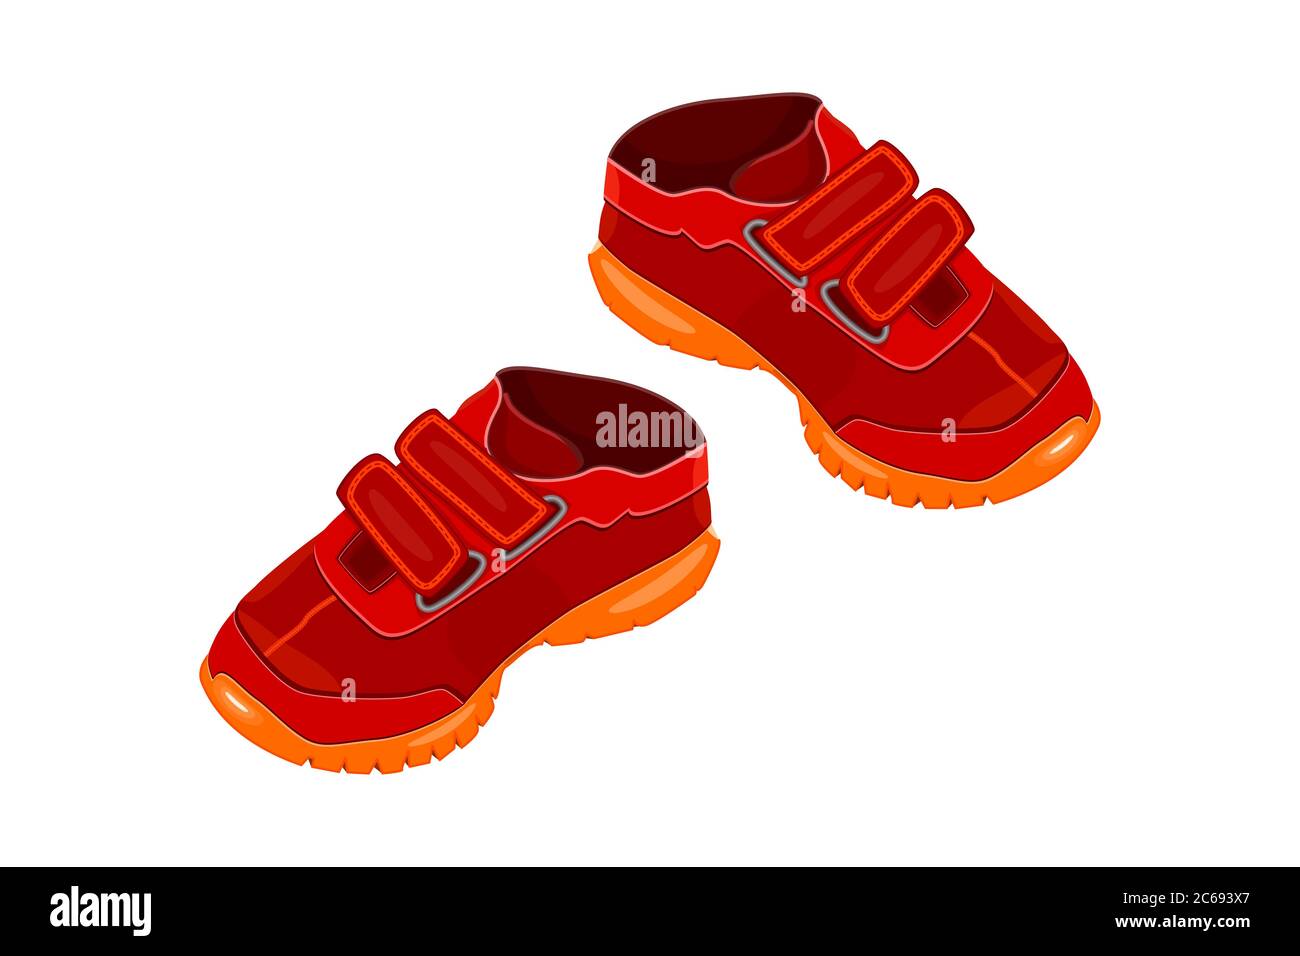 Paire de chaussures rouges isolées sur fond blanc. Deux sneakers adul rouges pour enfant ou jeune avec semelle velcro et orange. Chaussures de sport. Logo ou symbole de l'enfant Illustration de Vecteur